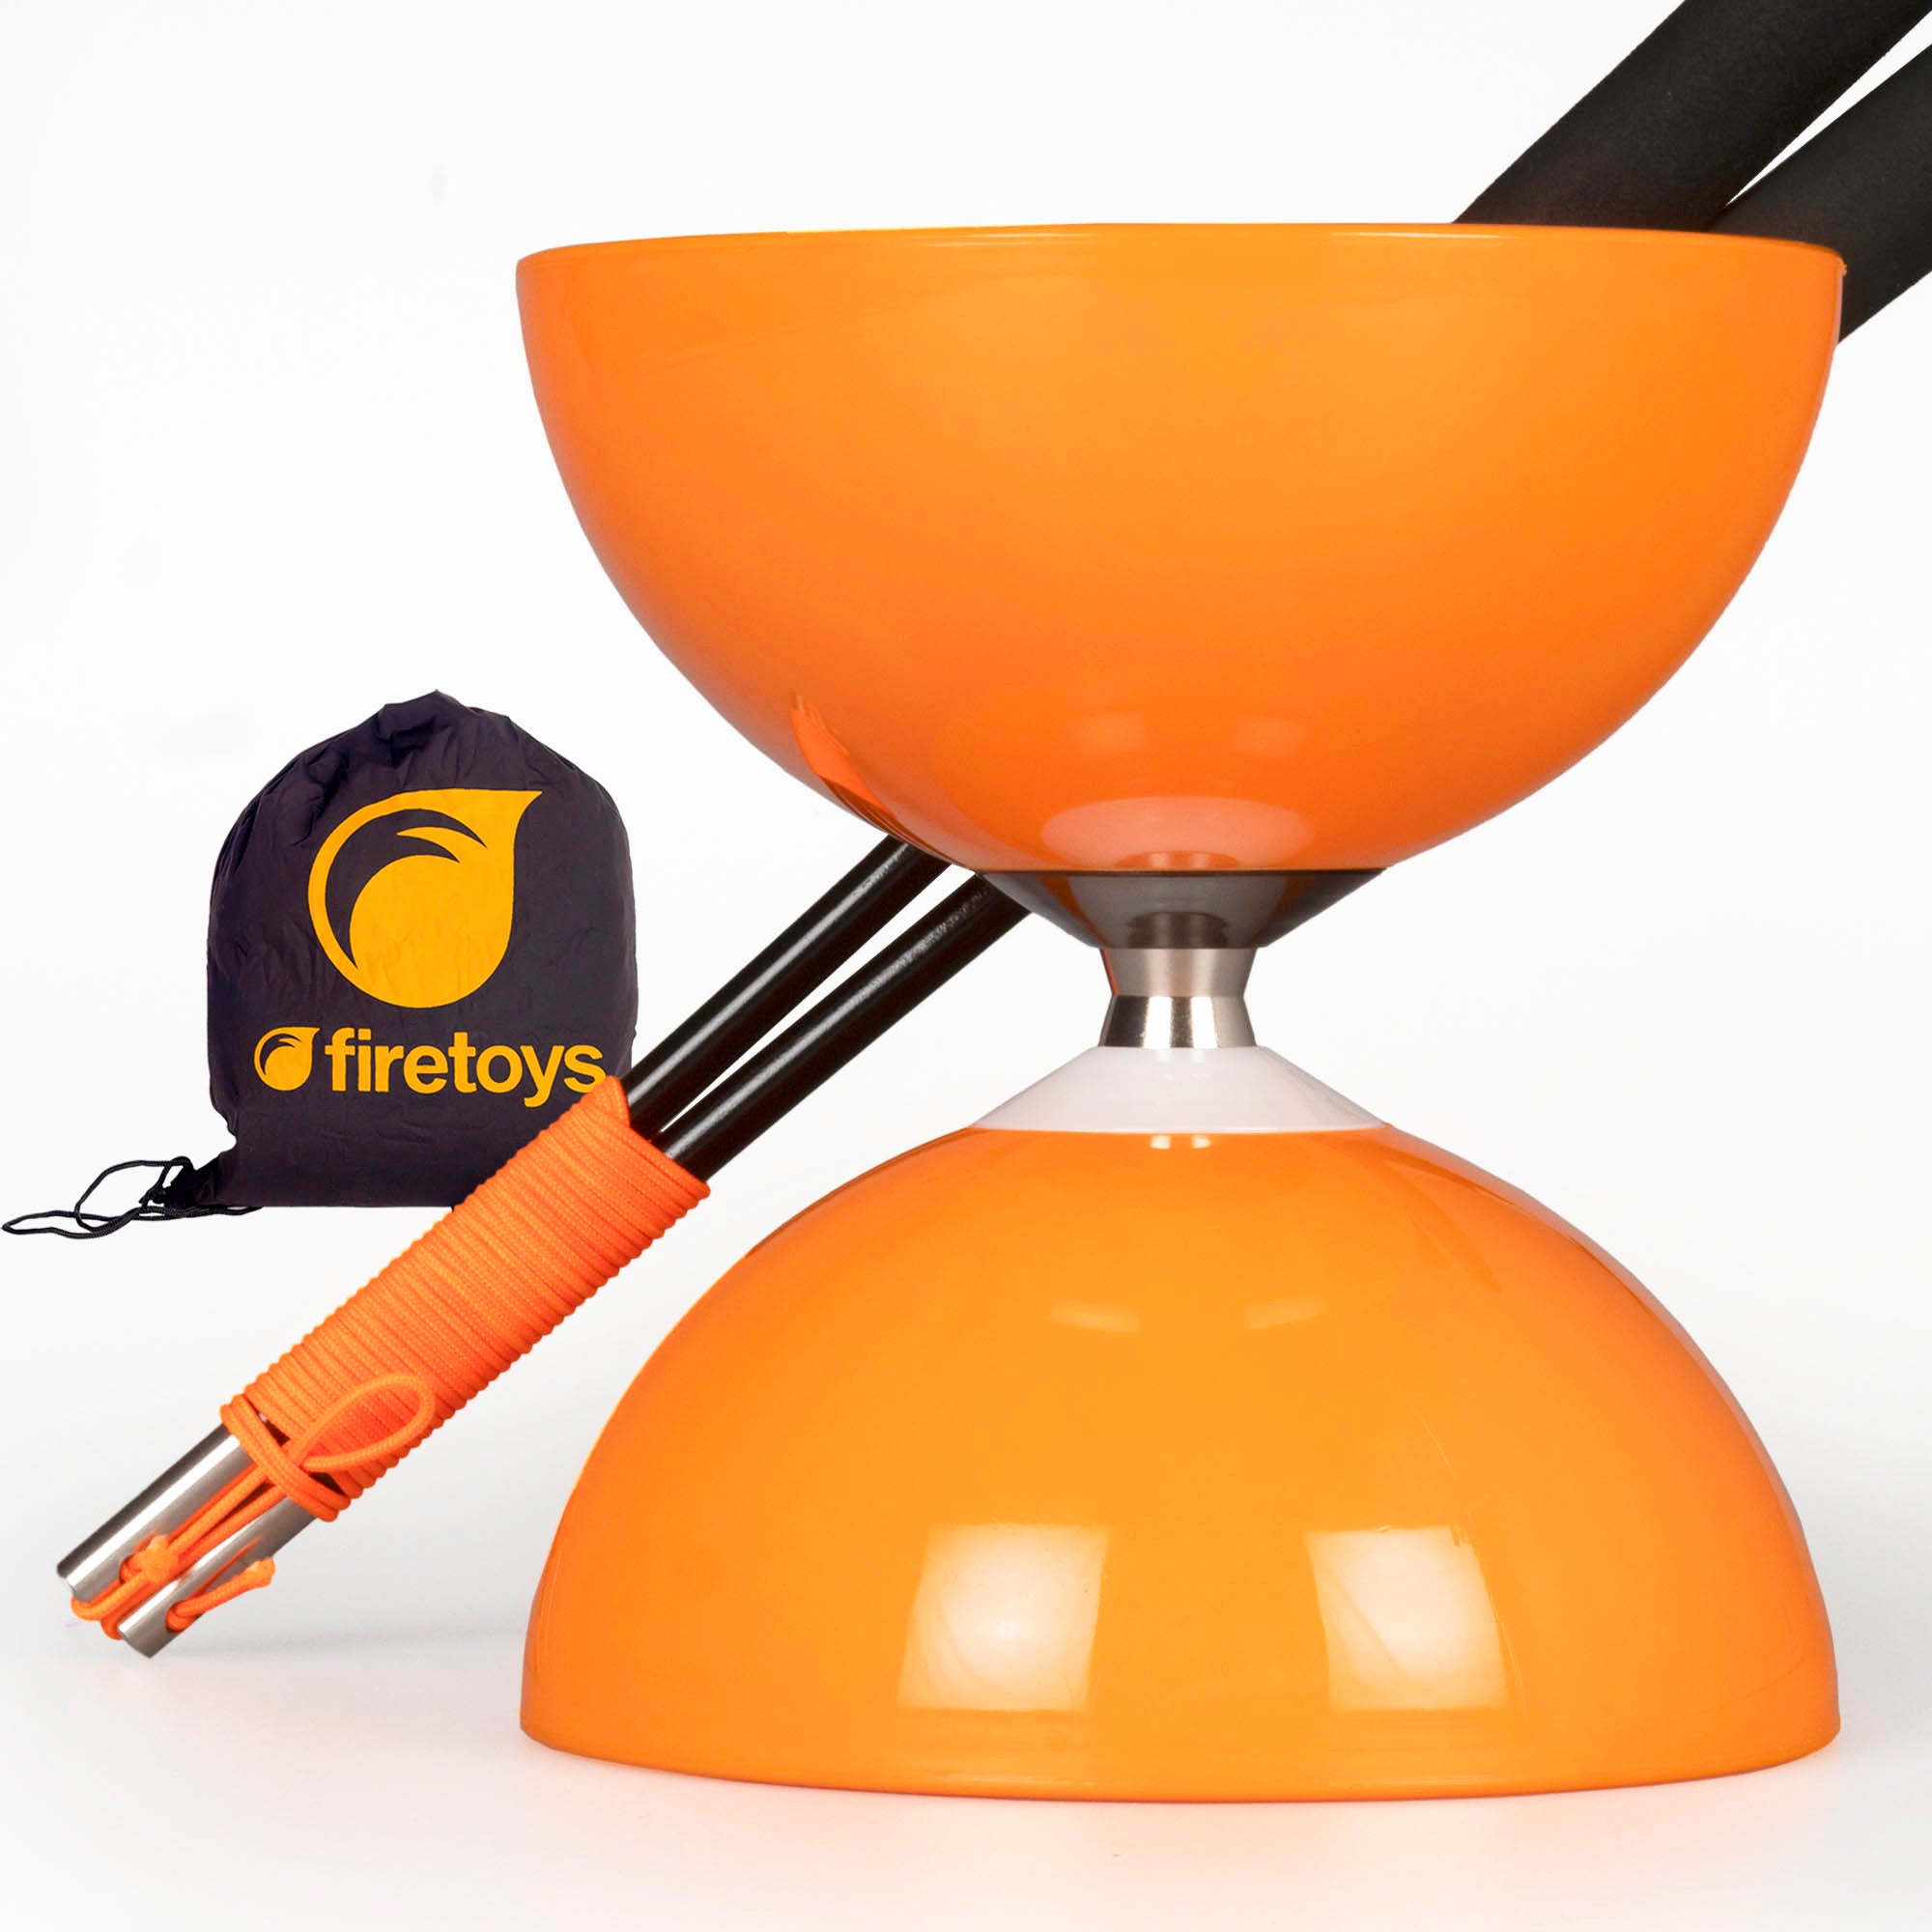 Orange diabolo with handsticks and bag